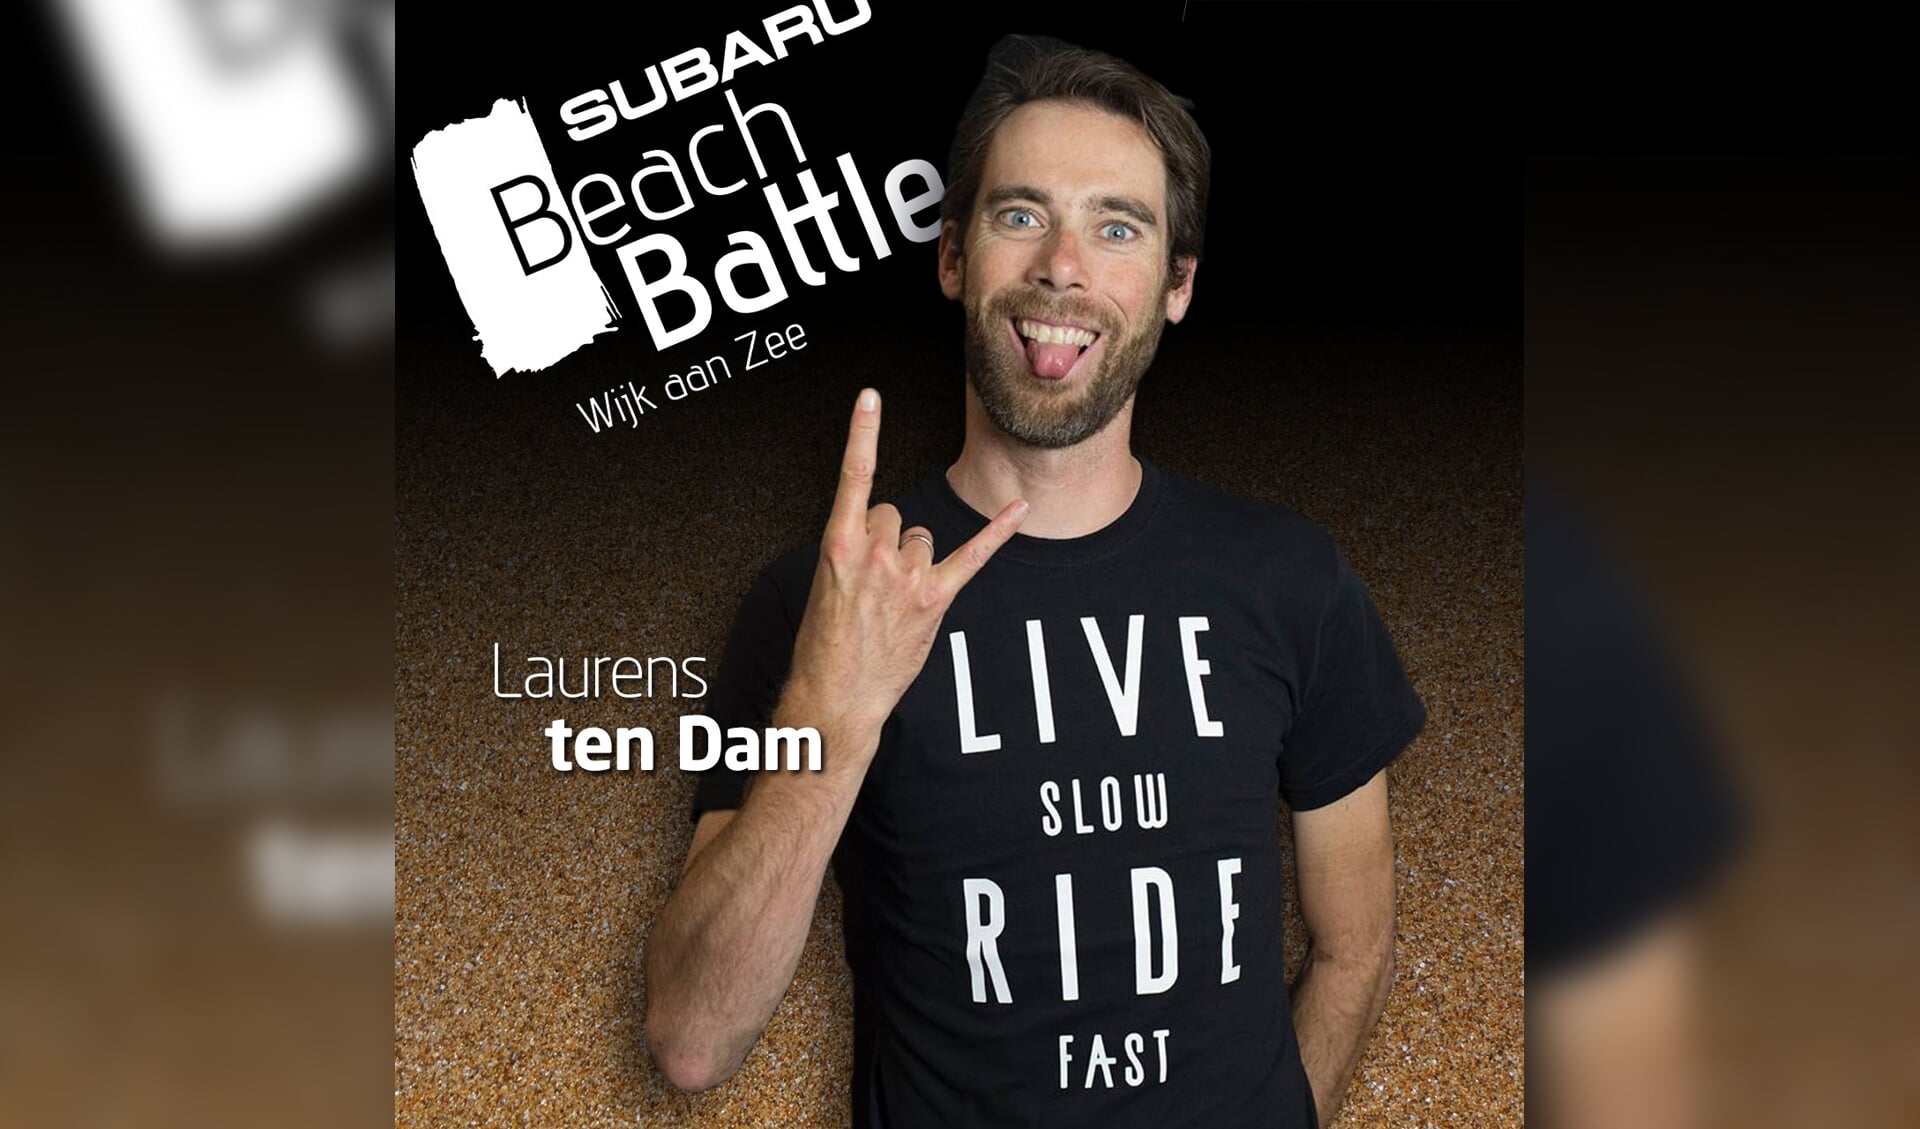  Laurens ten Dam doet weer mee aan de Subaru BeachBattle.